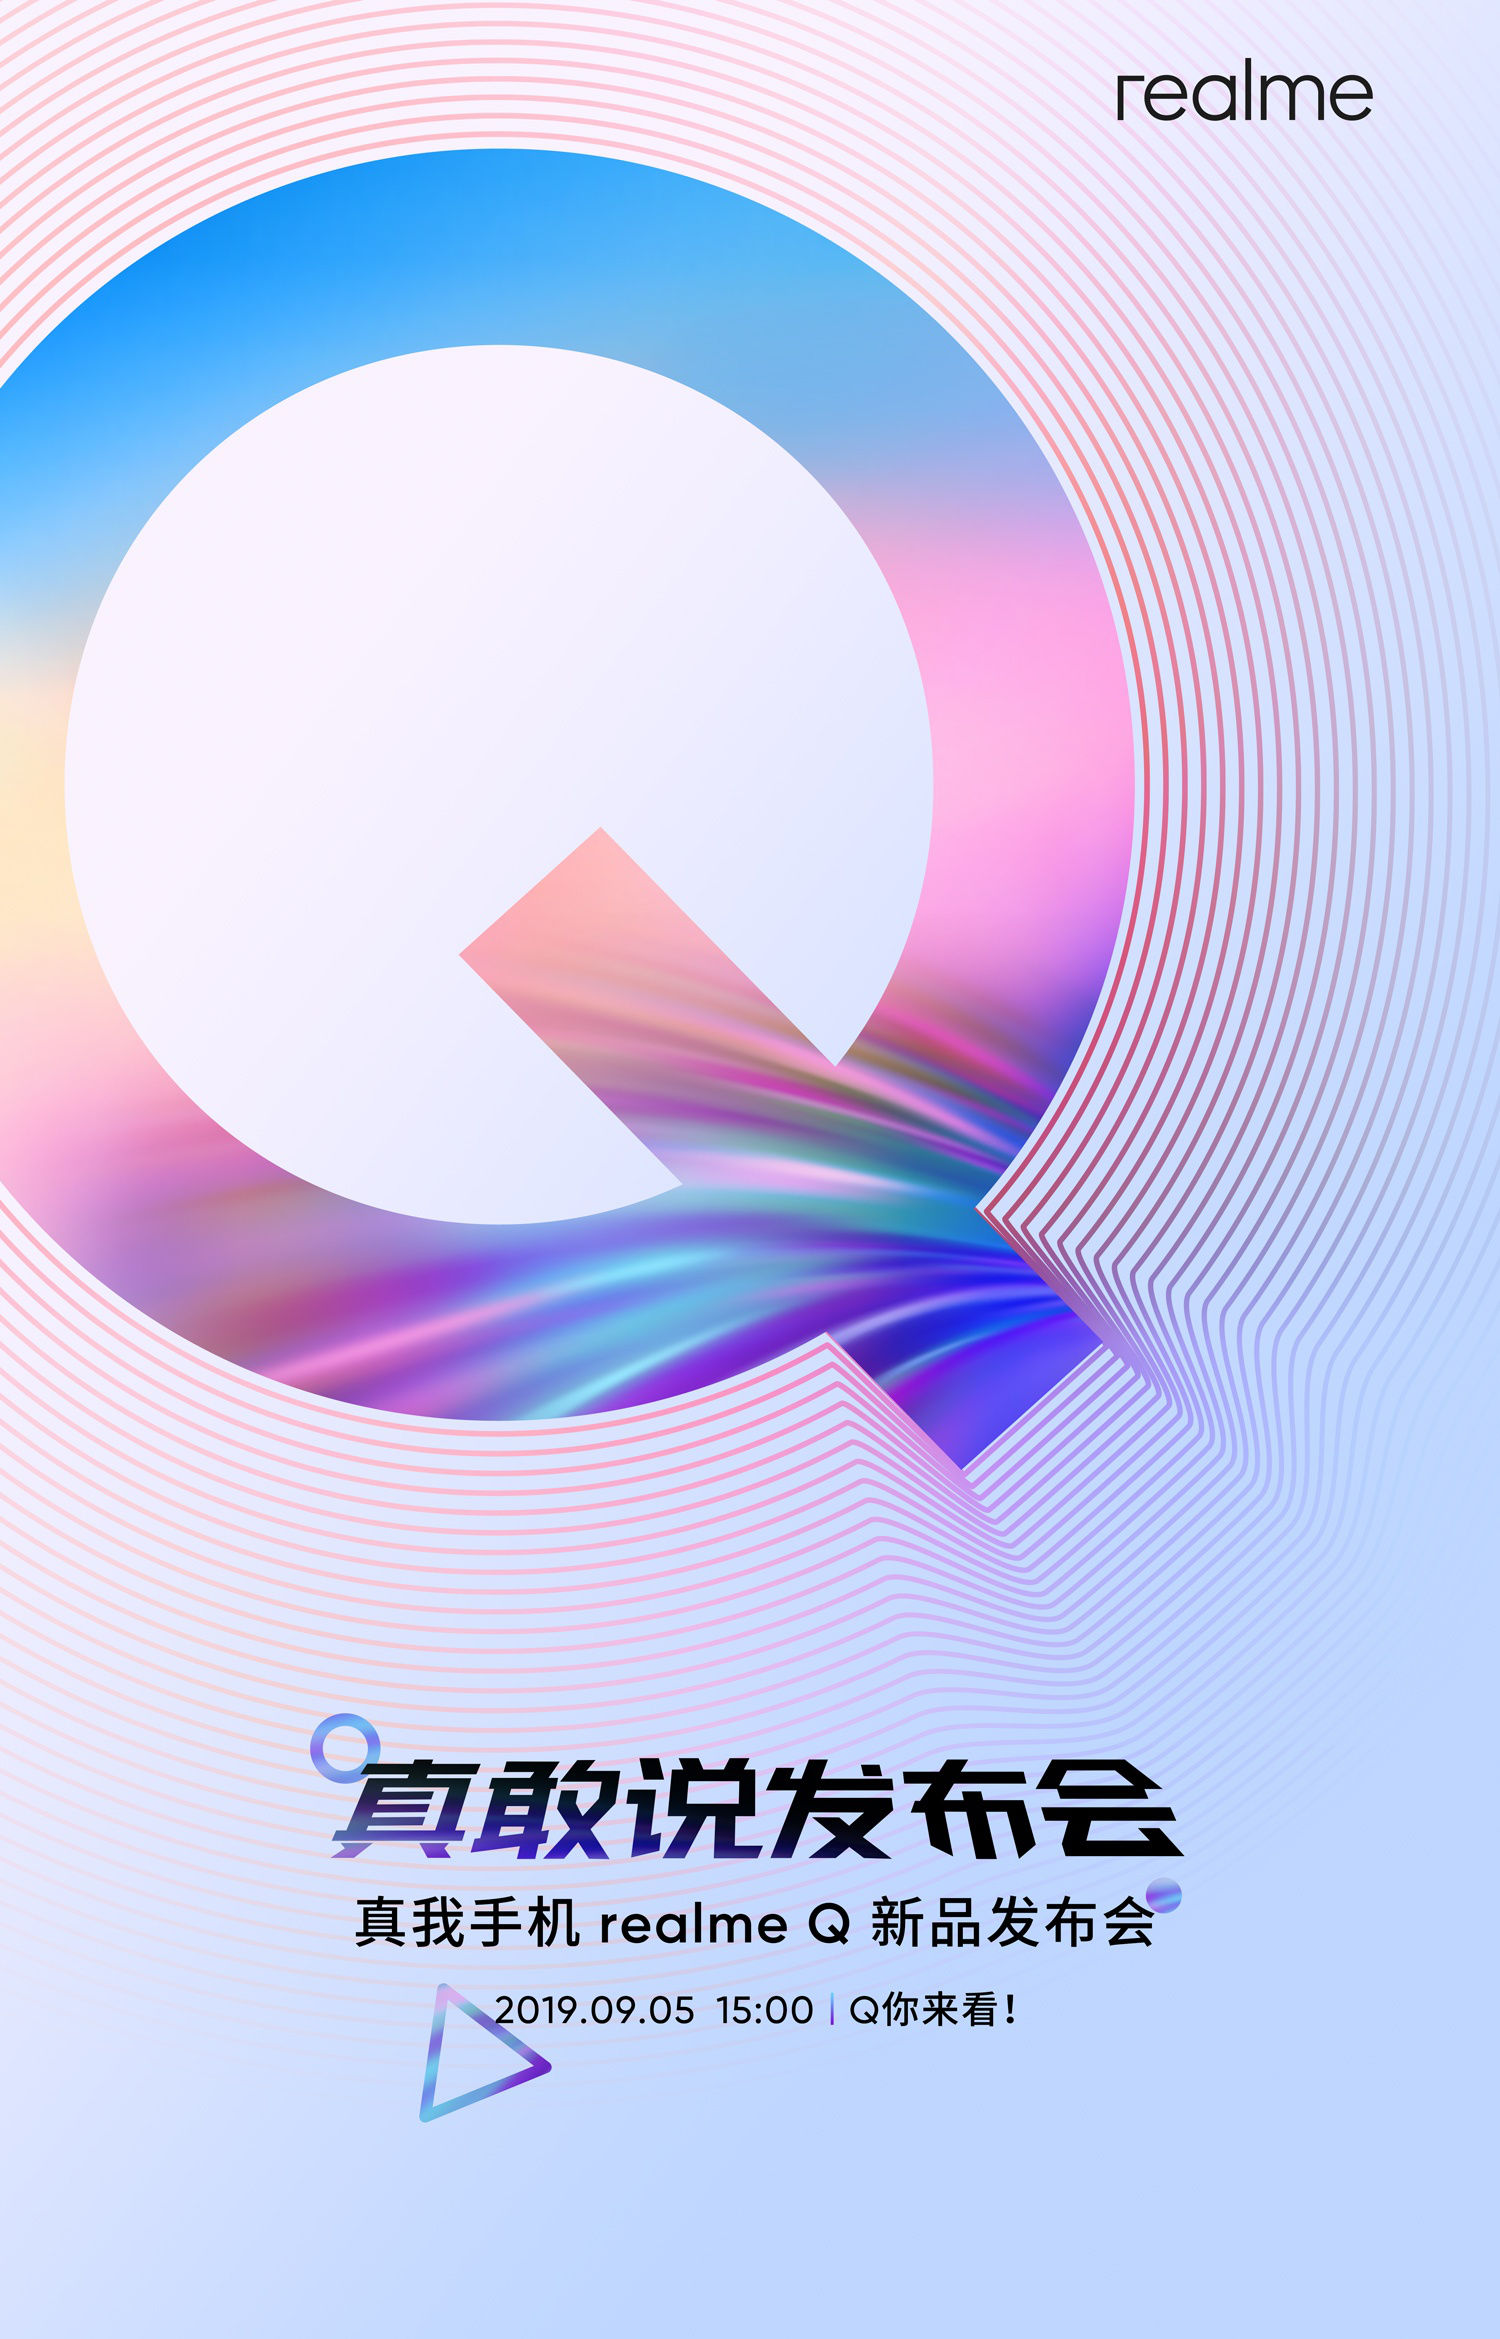 Q-serien Realme med fyrhjuliga kameror uppsättning för debut i Kina den 5 september 1